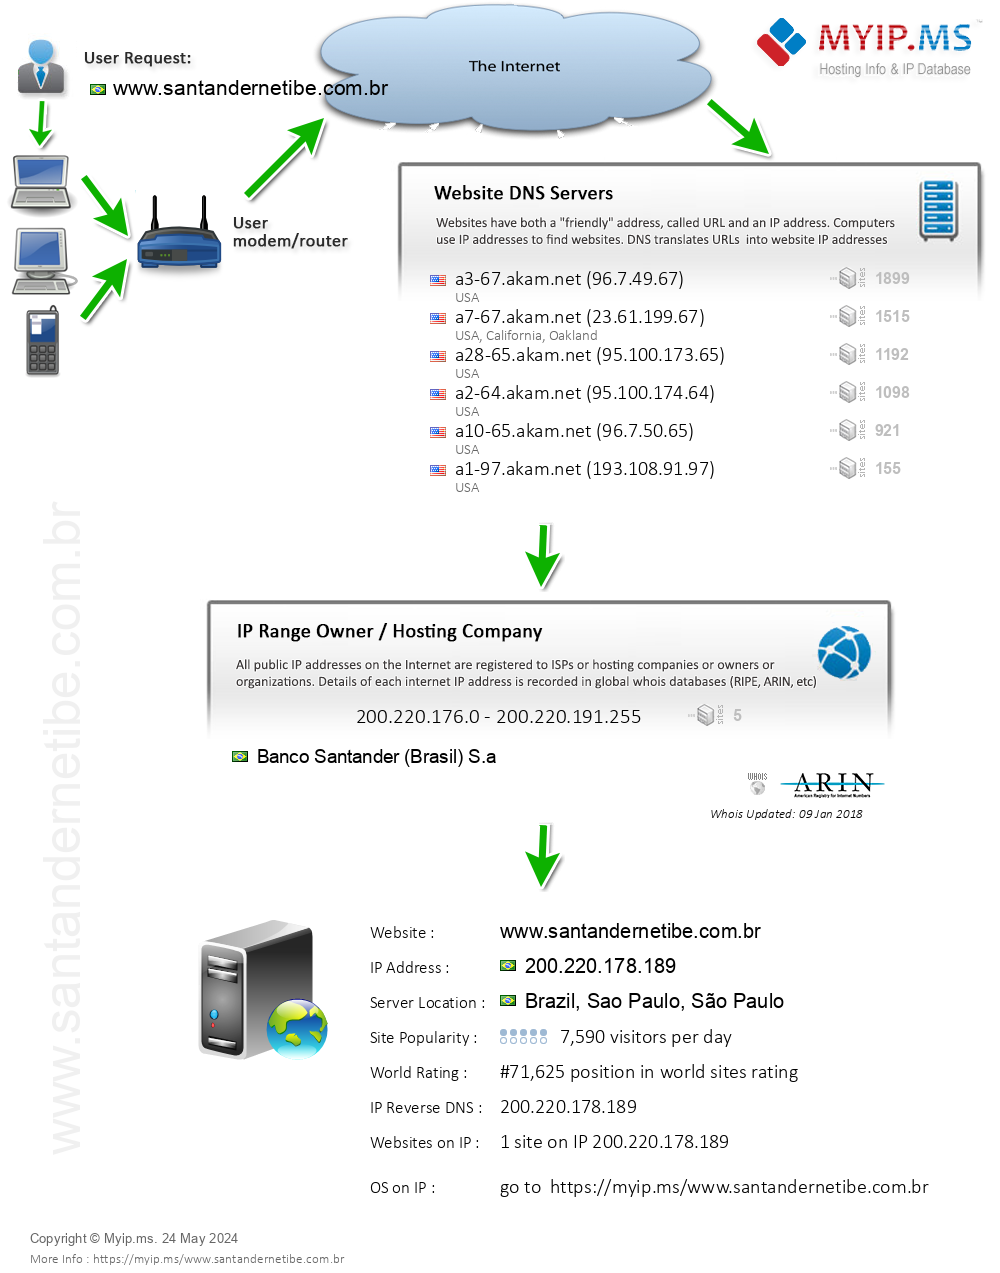 Santandernetibe.com.br - Website Hosting Visual IP Diagram